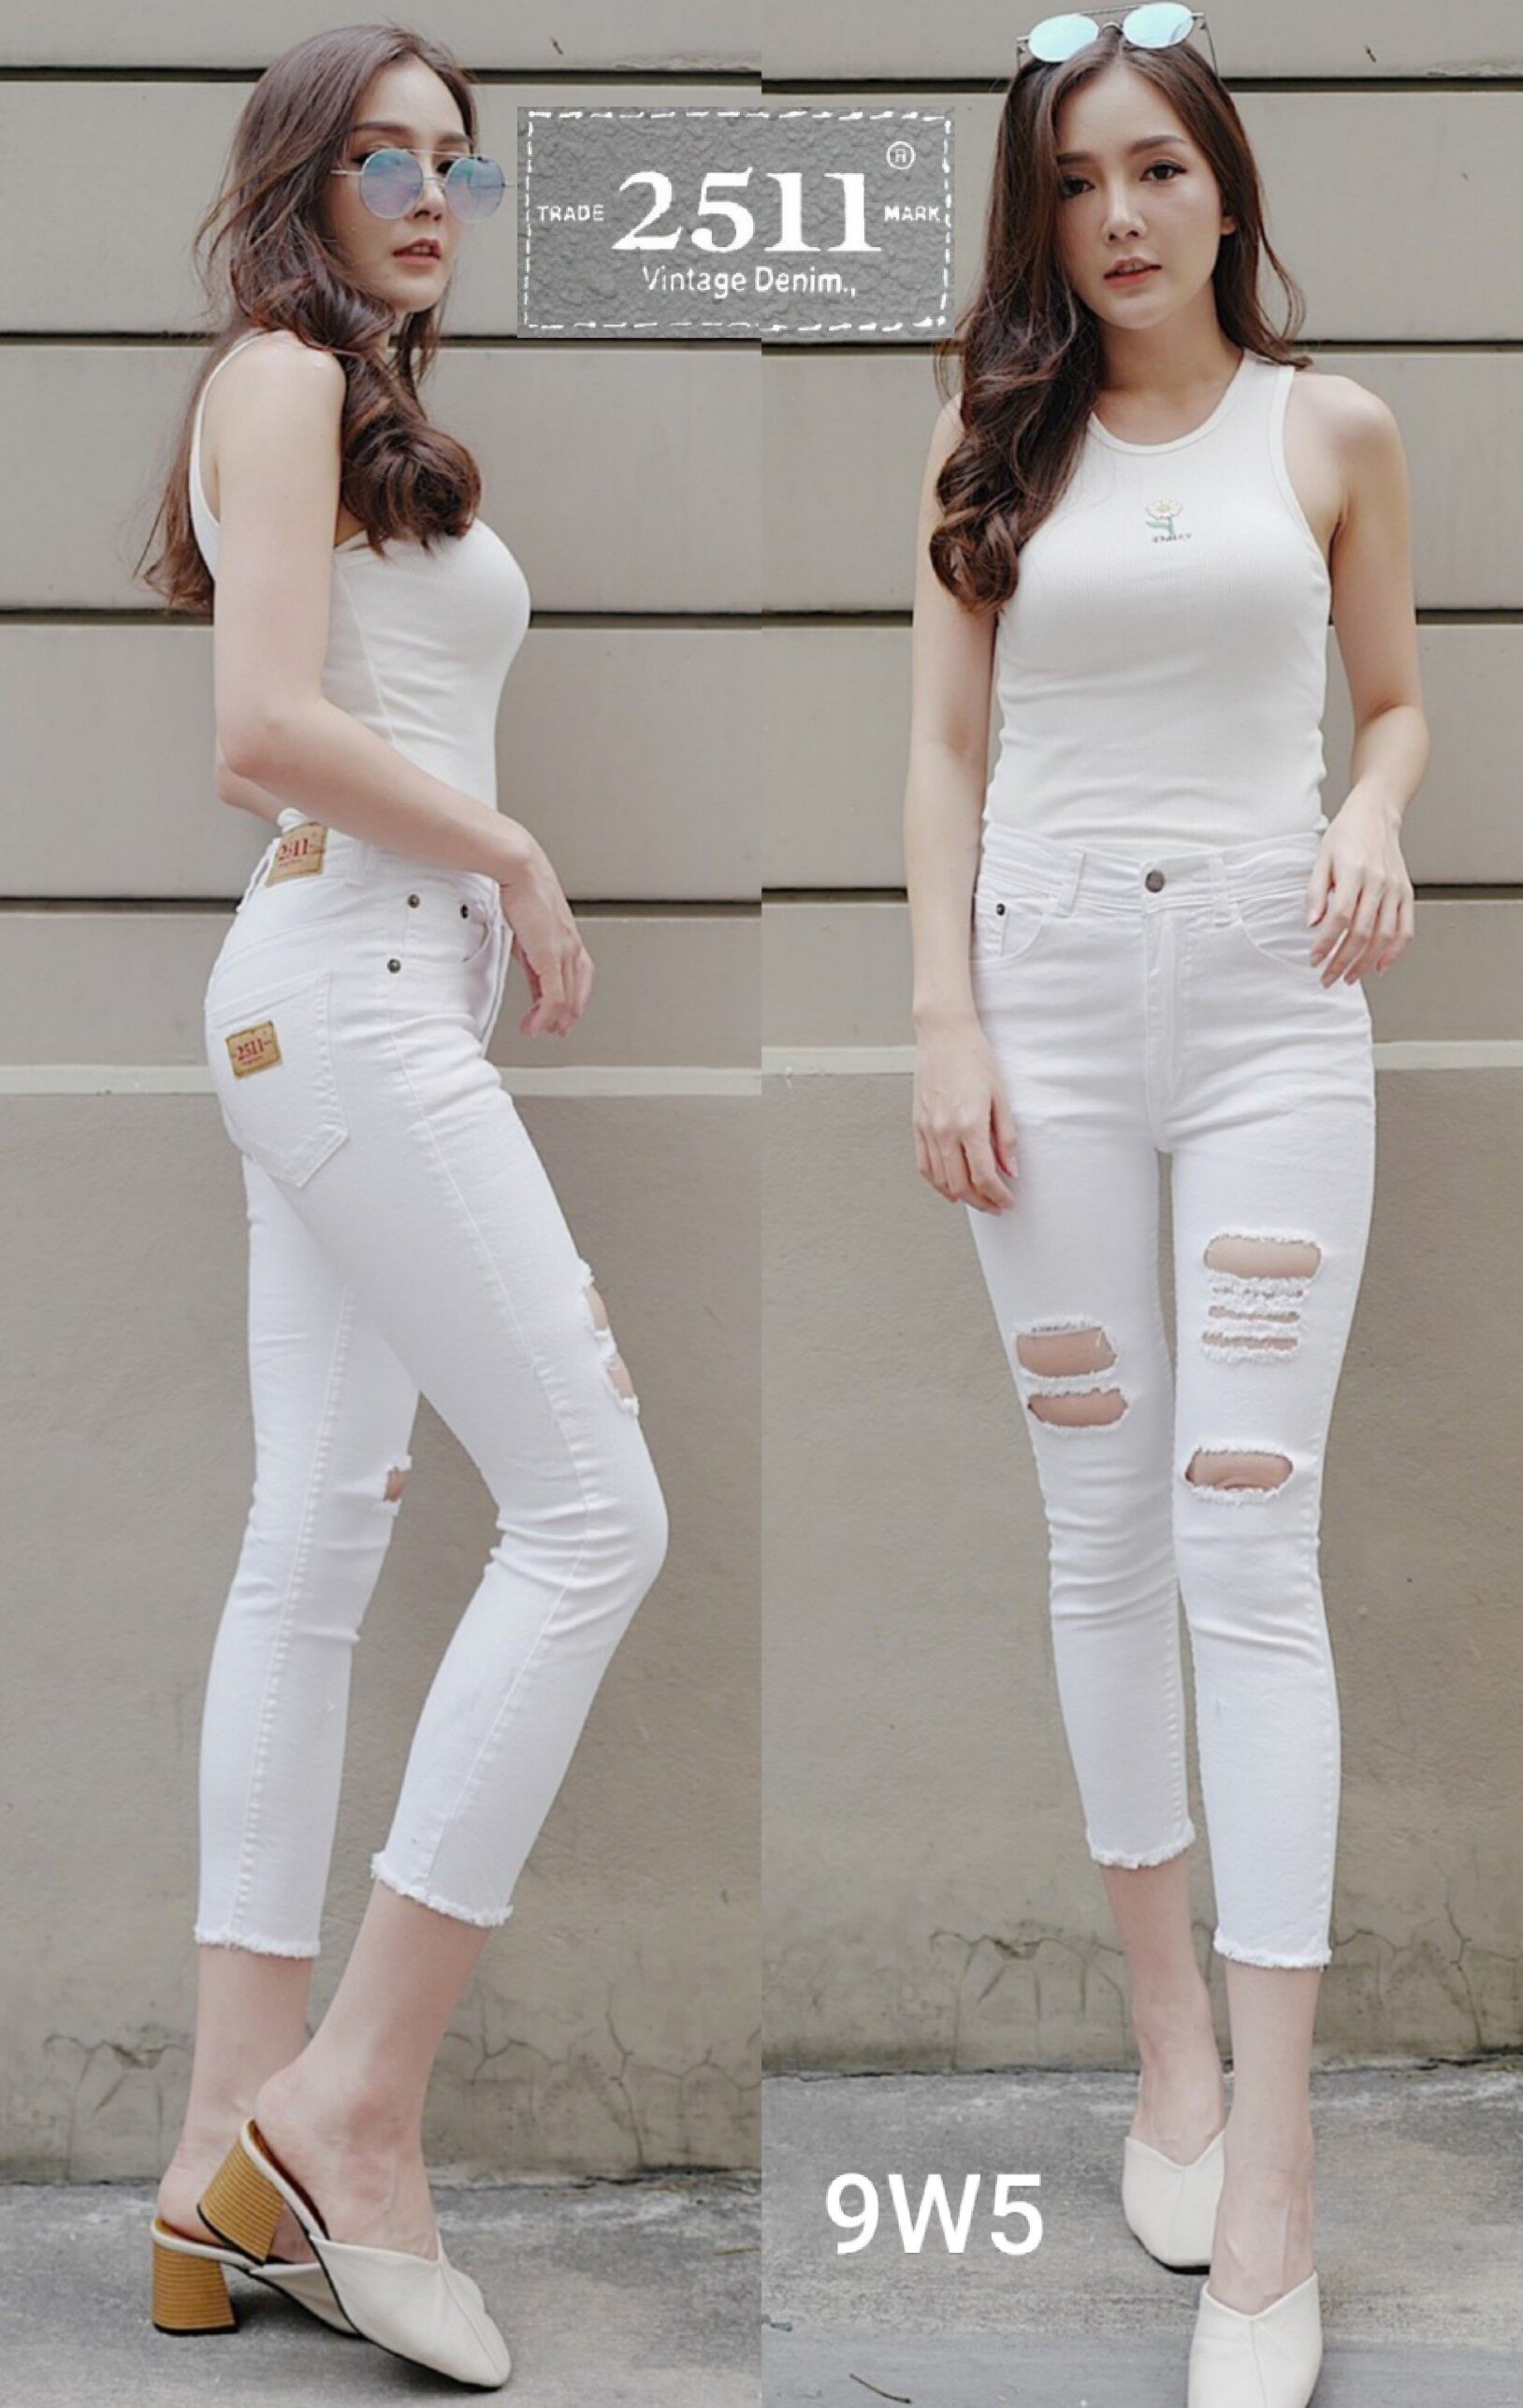 [[ถูกที่สุด]]2511 Jeans by GREATกางเกงยีนส์ ผญ กางเกงยีนส์ กางเกงยีนส์ผู้หญิง กางเกงยีนส์ยืด เอวสูง ยีนส์ยืด เข้ารูปใส่แล้วสวยจริงๆค่ะ